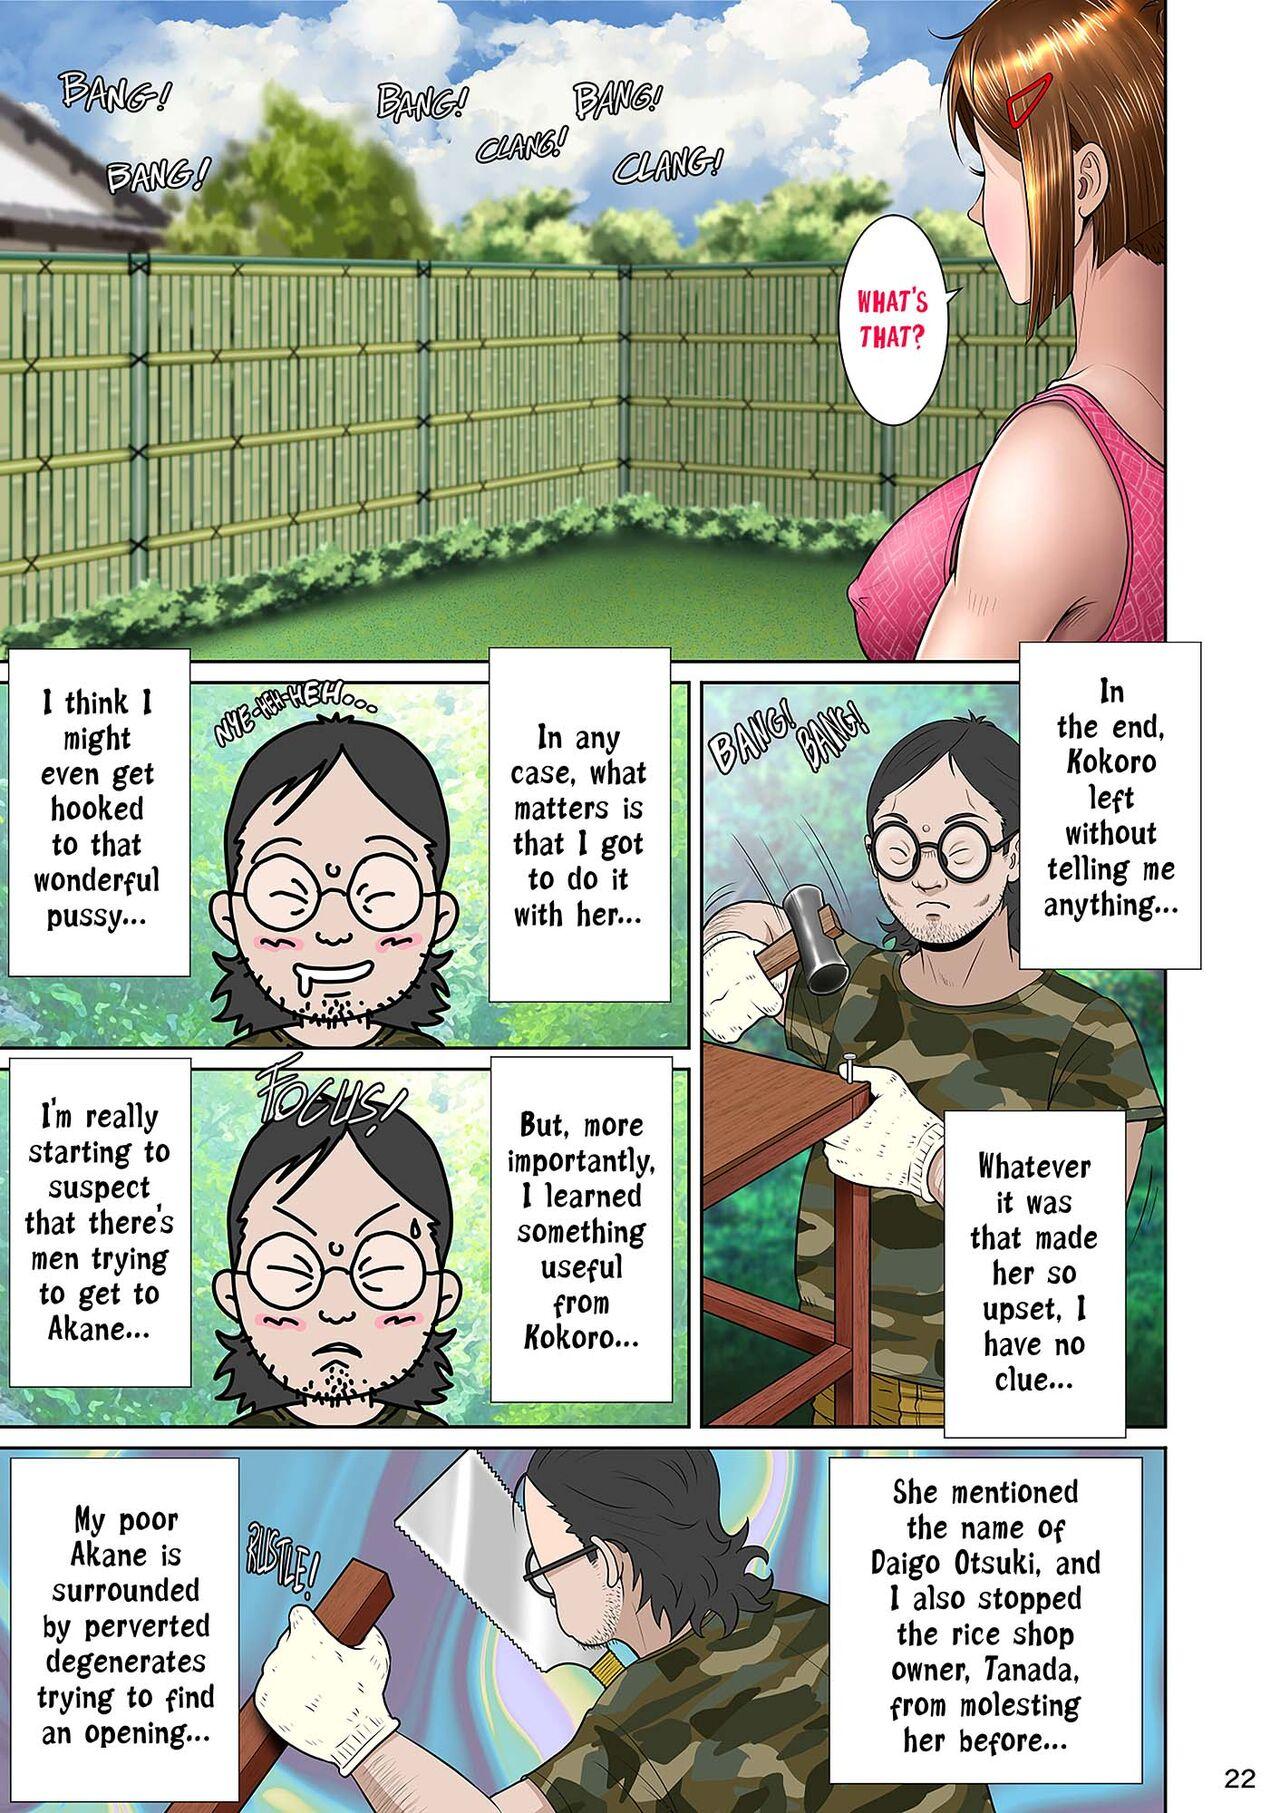 Kakine tsuma II daiichiwa | Wife on the Fence II - Chapter 3 31